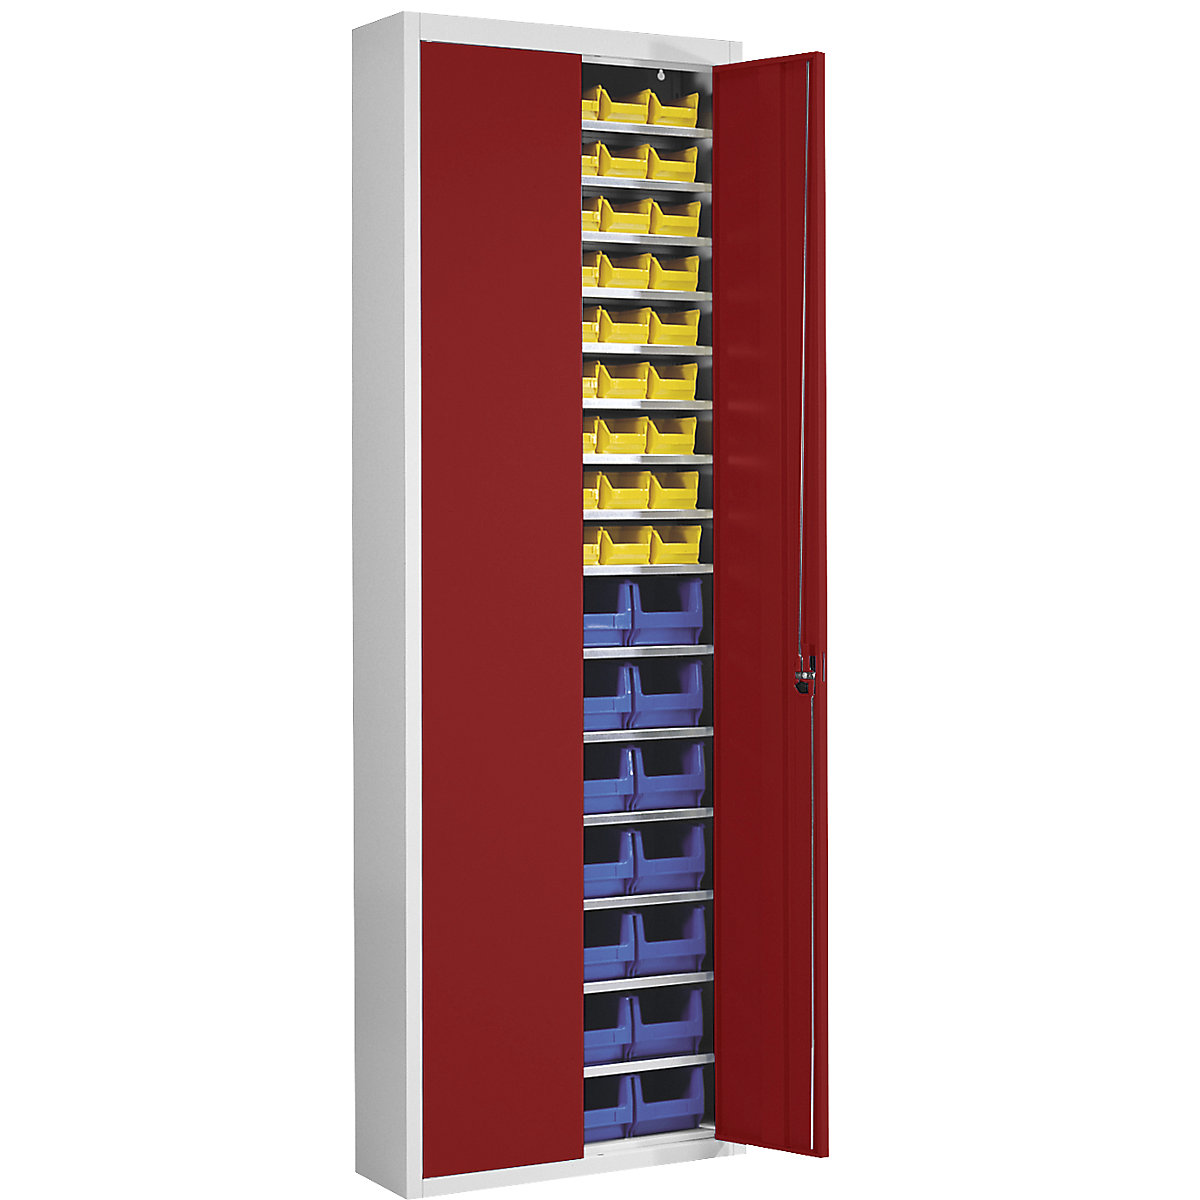 Skladová skriňa s prepravkami s viditeľným obsahom – mauser, v x š x h 2150 x 680 x 280 mm, dvojfarebná, korpus šedý, dvere červené, 82 prepraviek-7